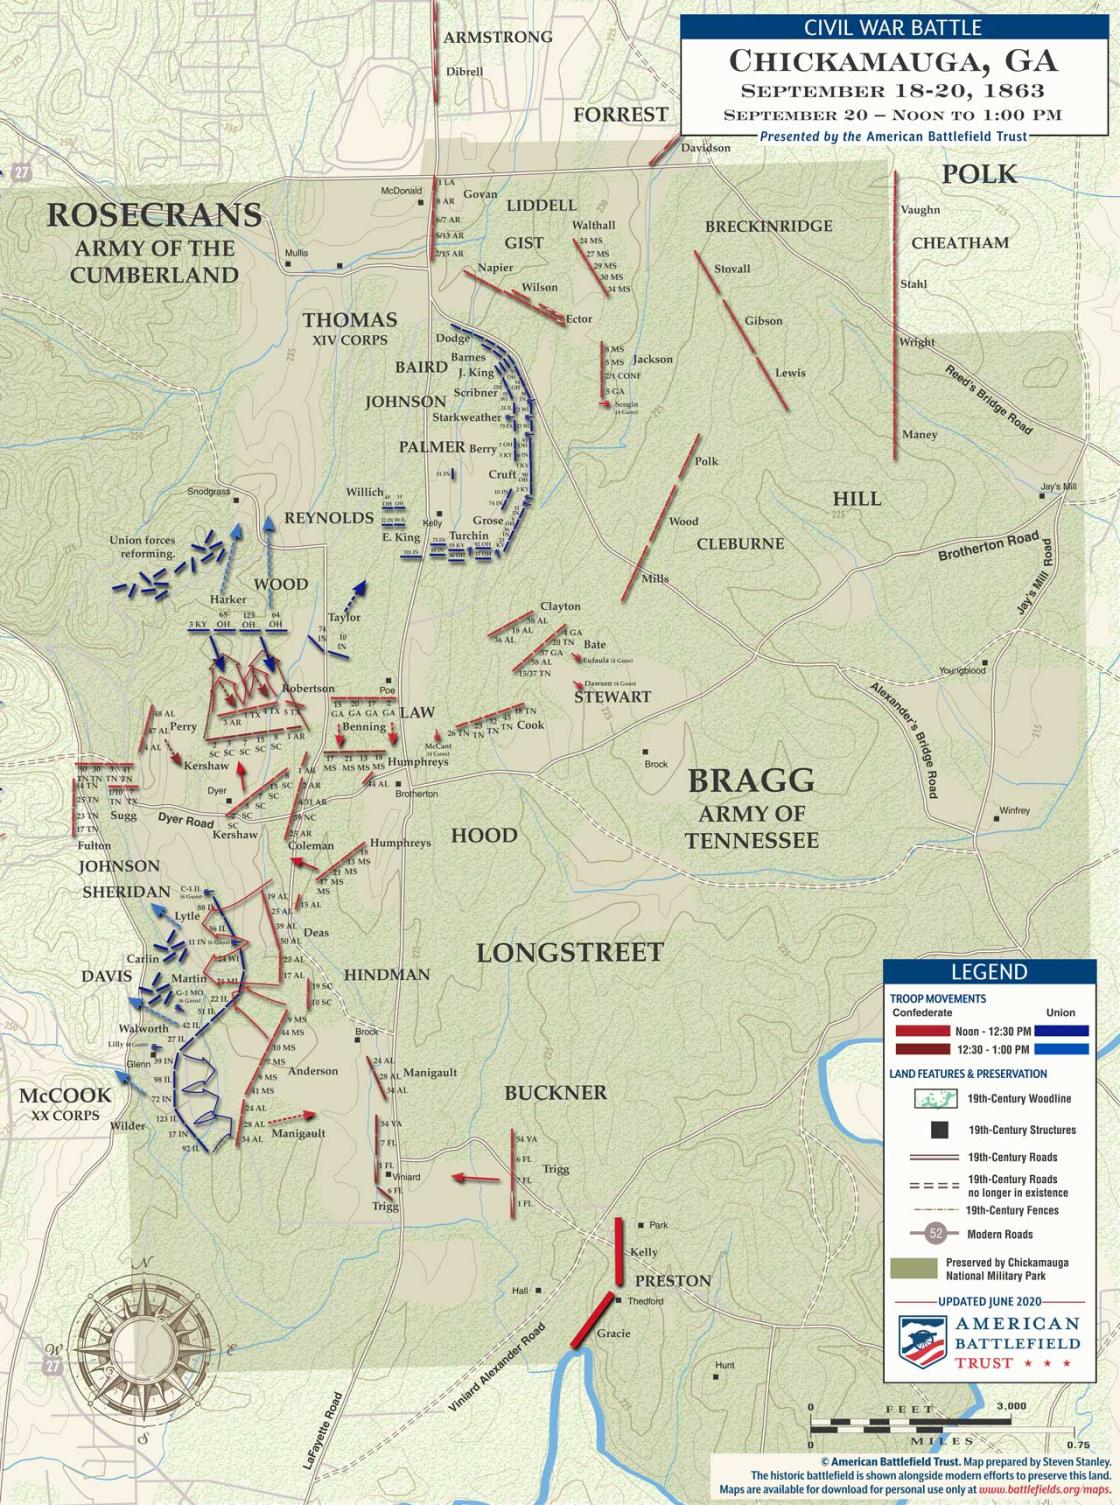 Chickamauga | Sept 20, 1863 | Noon - 1 pm Battle Map